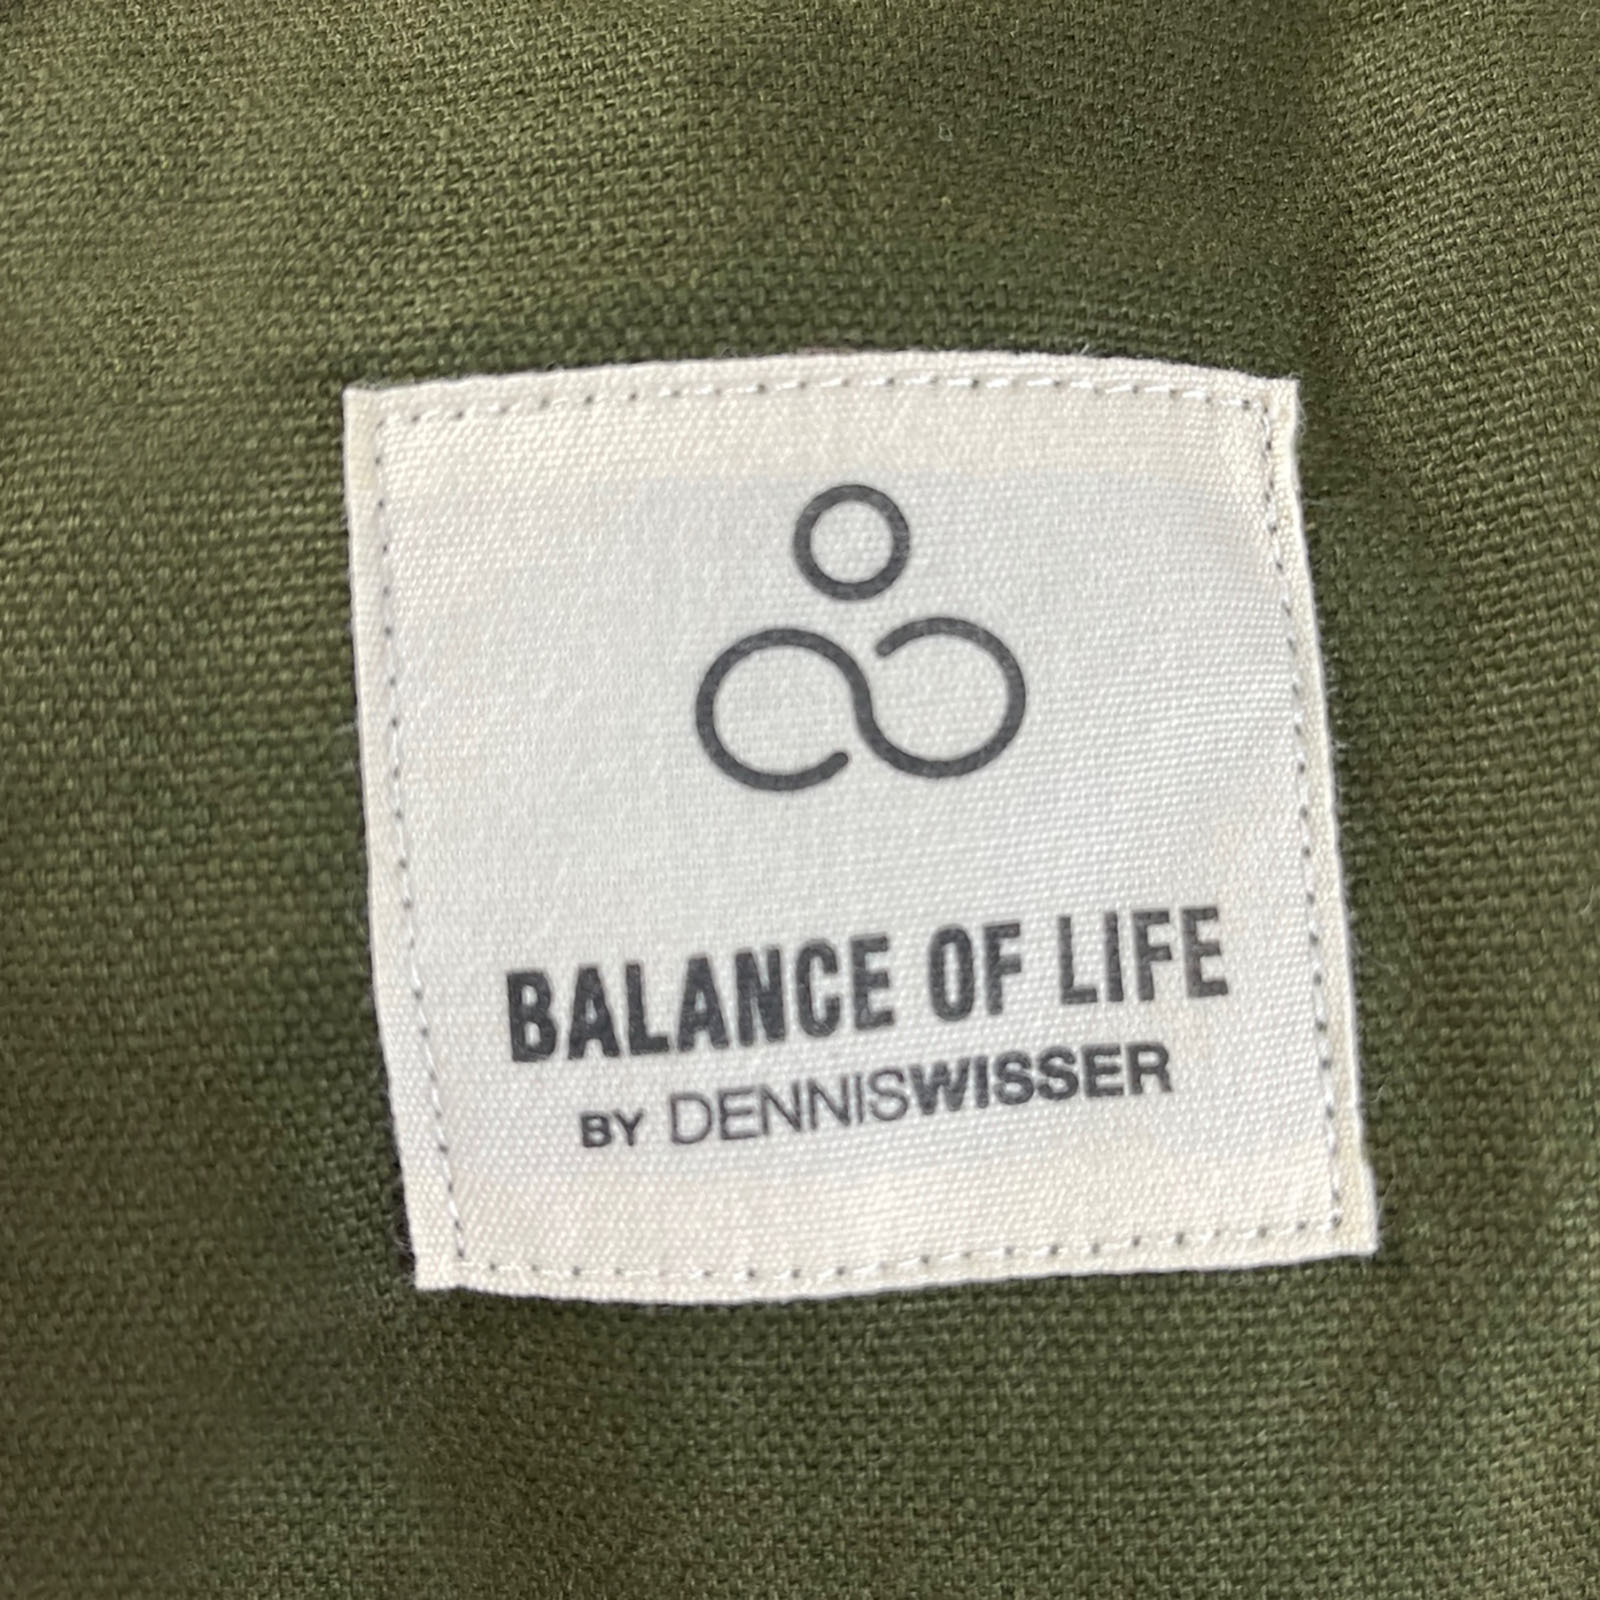 Printed cotton label on yoga bag